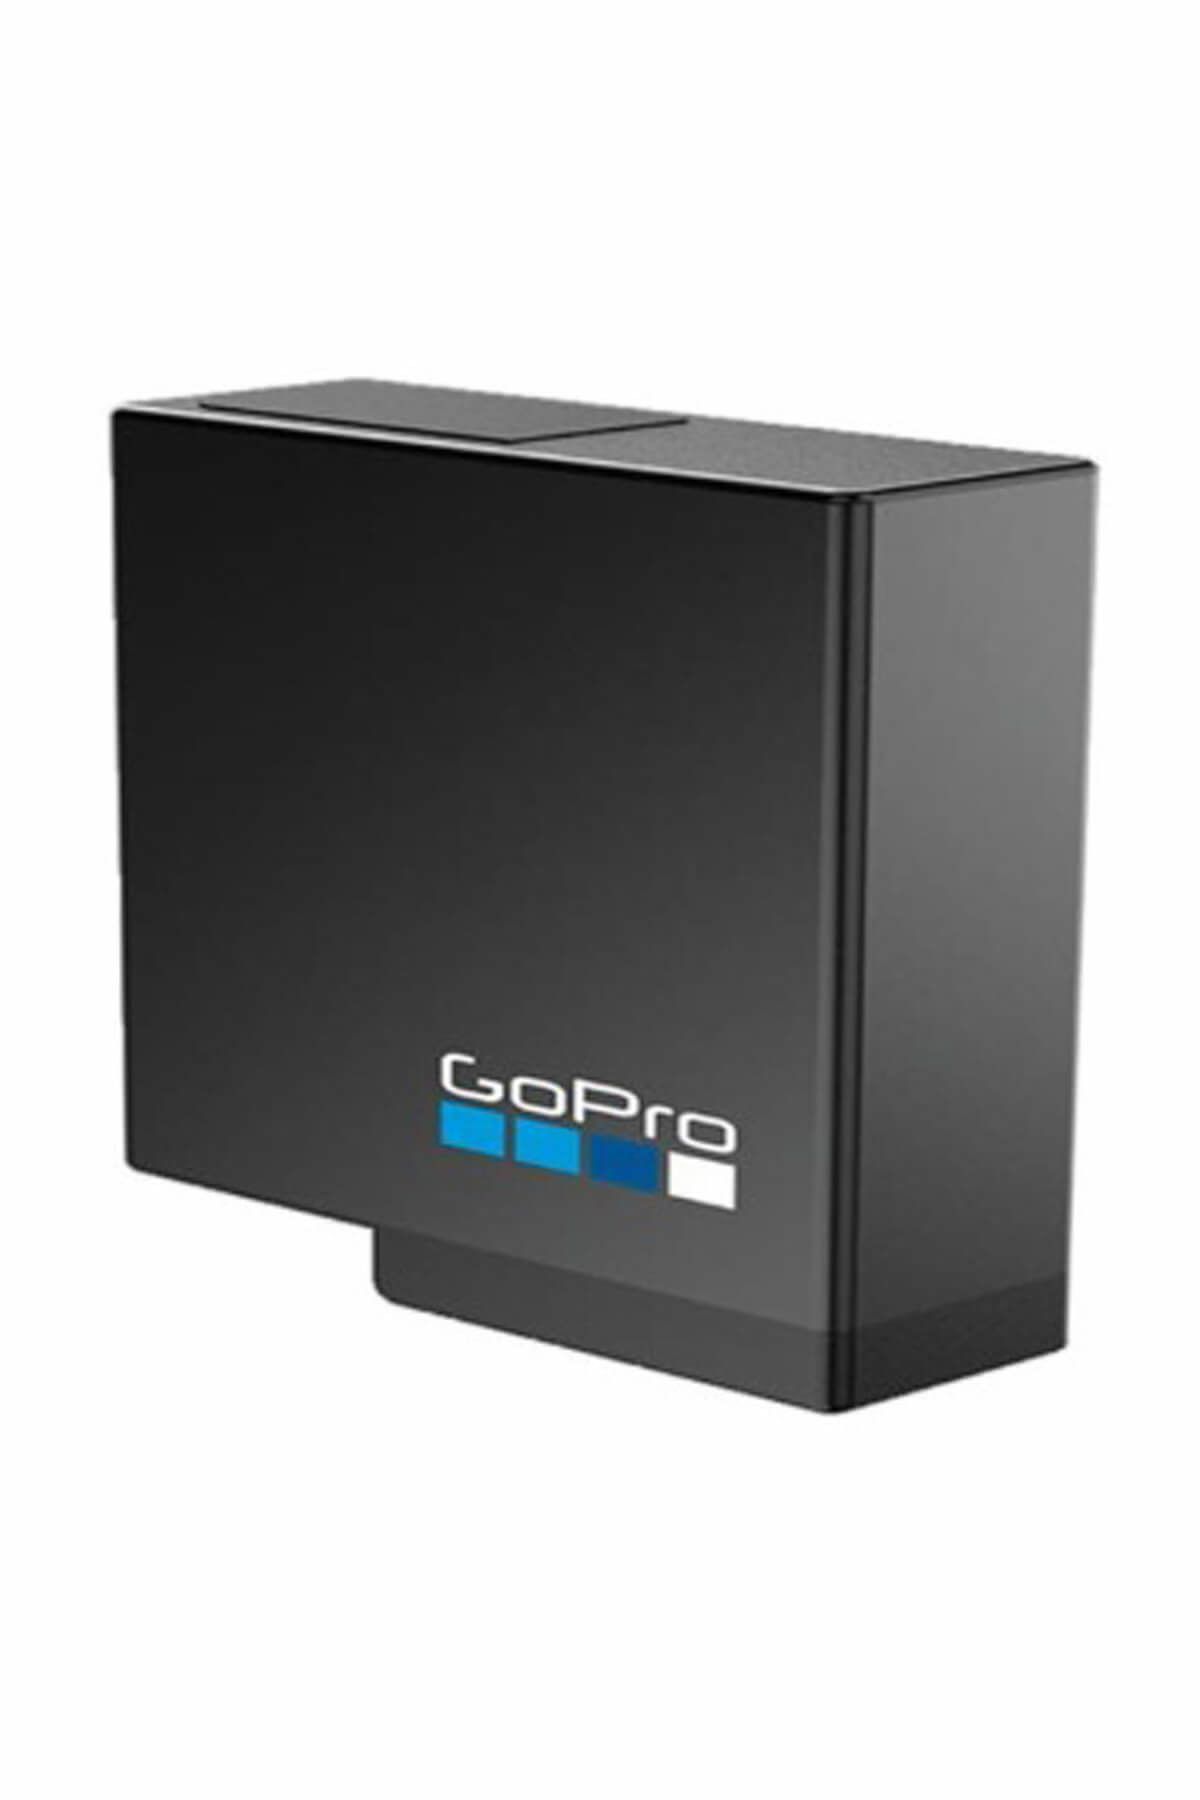 GoPro Sarj Edilebilir Batarya (Hero5 Black İçin) - 5GPR-AABAT-001